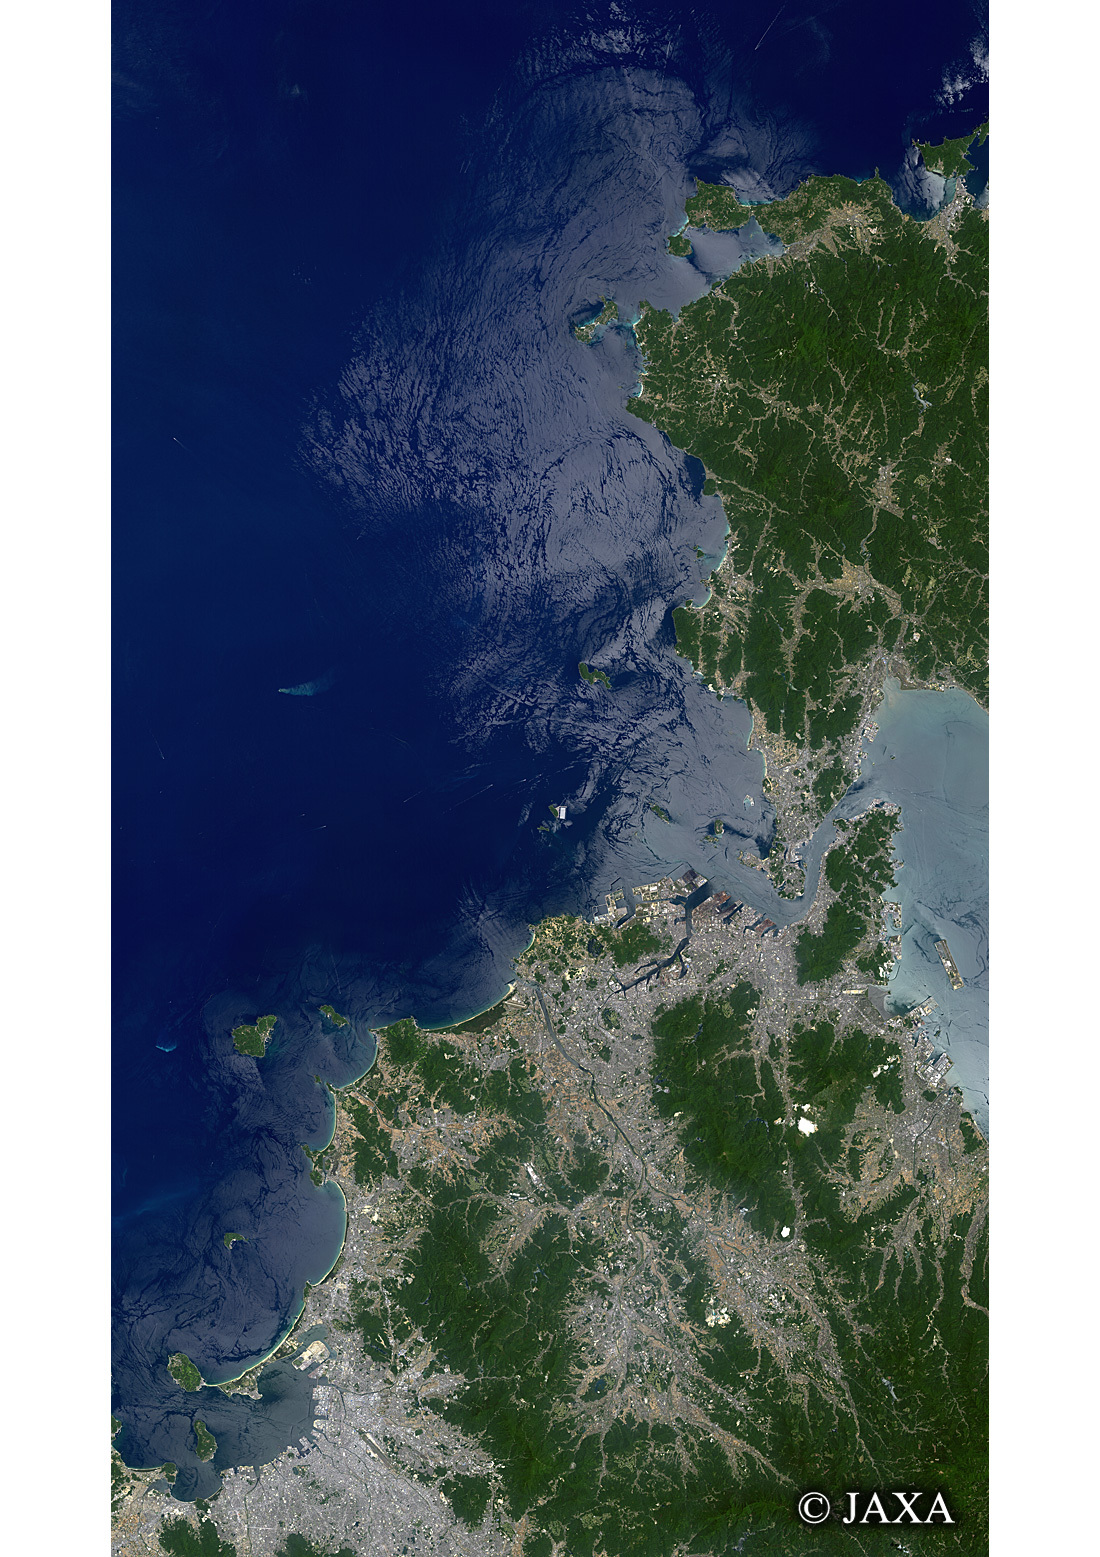 だいちから見た日本の都市 関門海峡:衛星画像